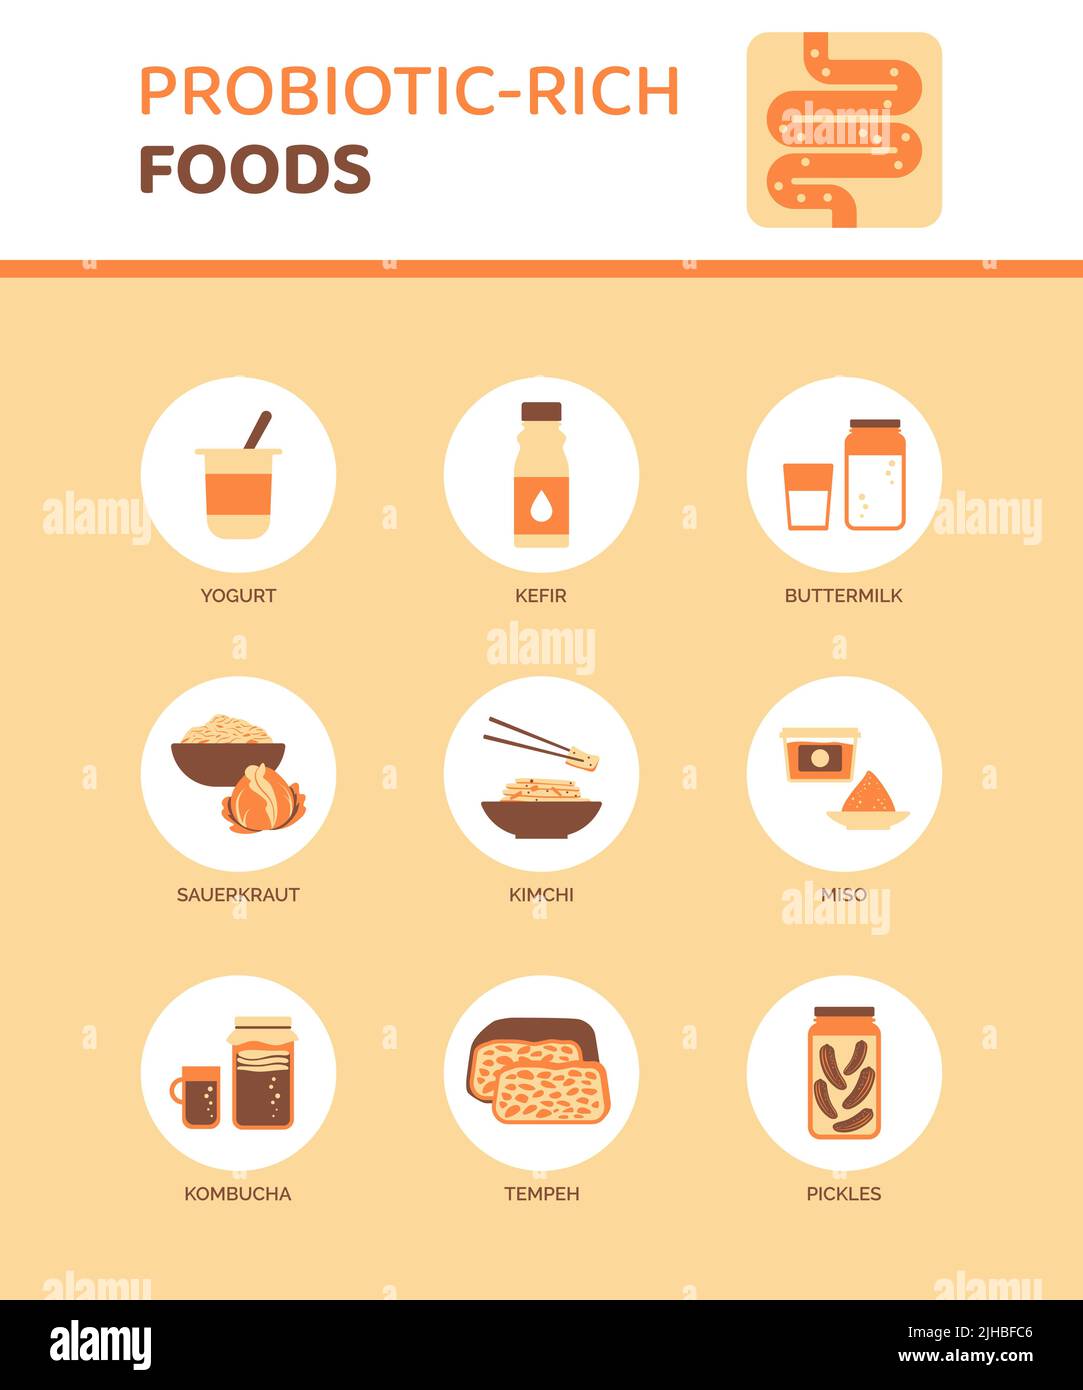 Probiotisch-reiches Essen für eine bessere Verdauung, Infografik mit Symbolen Stock Vektor